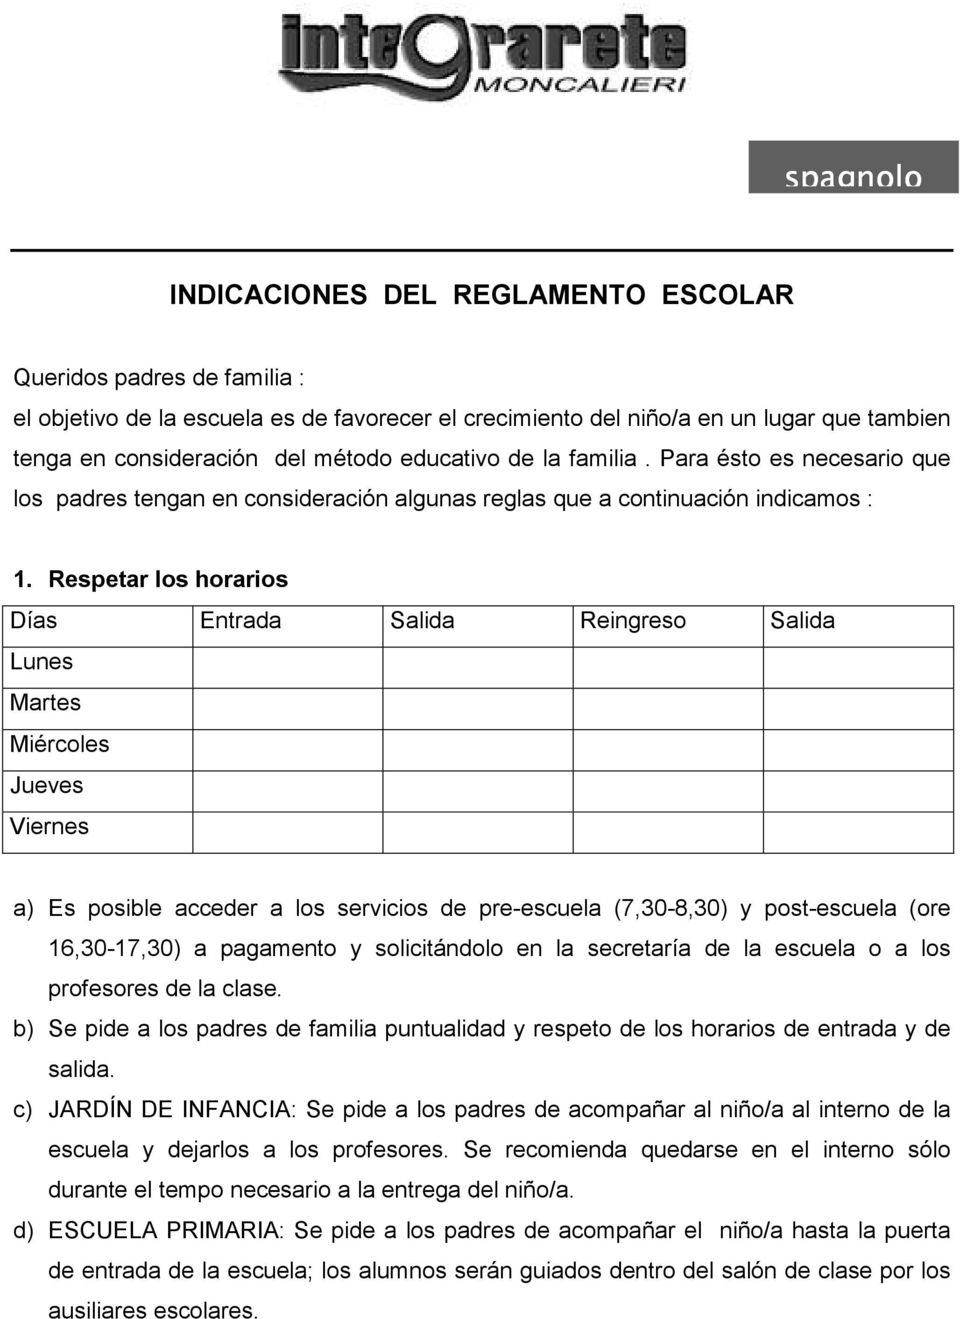 INDICACIONES DEL REGLAMENTO ESCOLAR - PDF Descargar libre